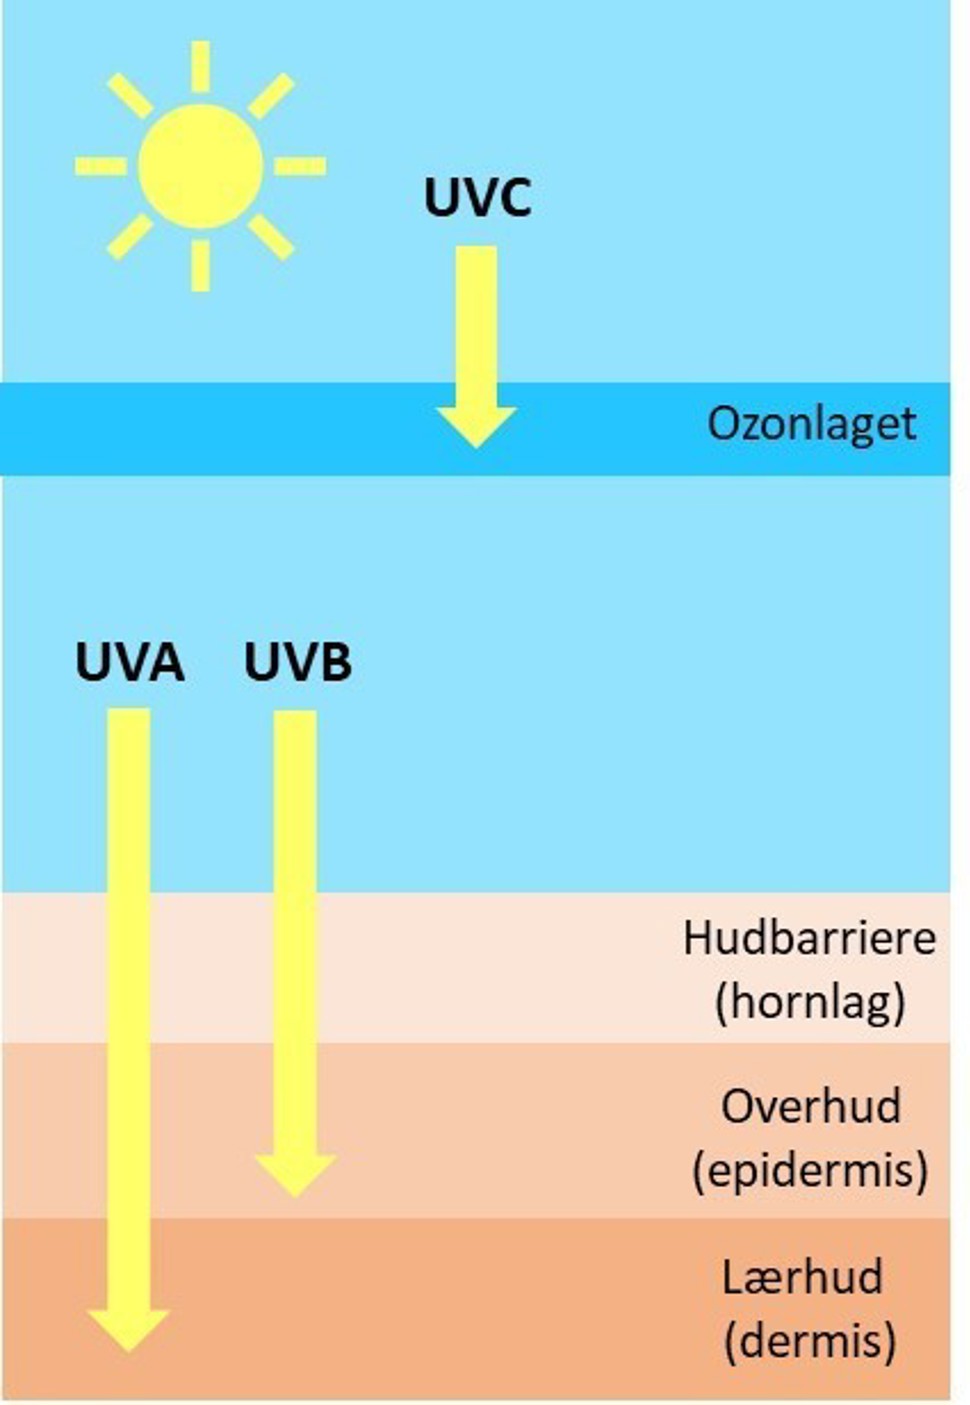 Ultrafiolette stråler, også kalt UV-lys, kommer hovedsakelig fra sola, men også fra enkelte kunstige lyskilder. Dette er lys som mennesker ikke kan se. Avhengig av strålenes bølgelengde deles de inn i tre grupper, UVA, UVB og UVC.